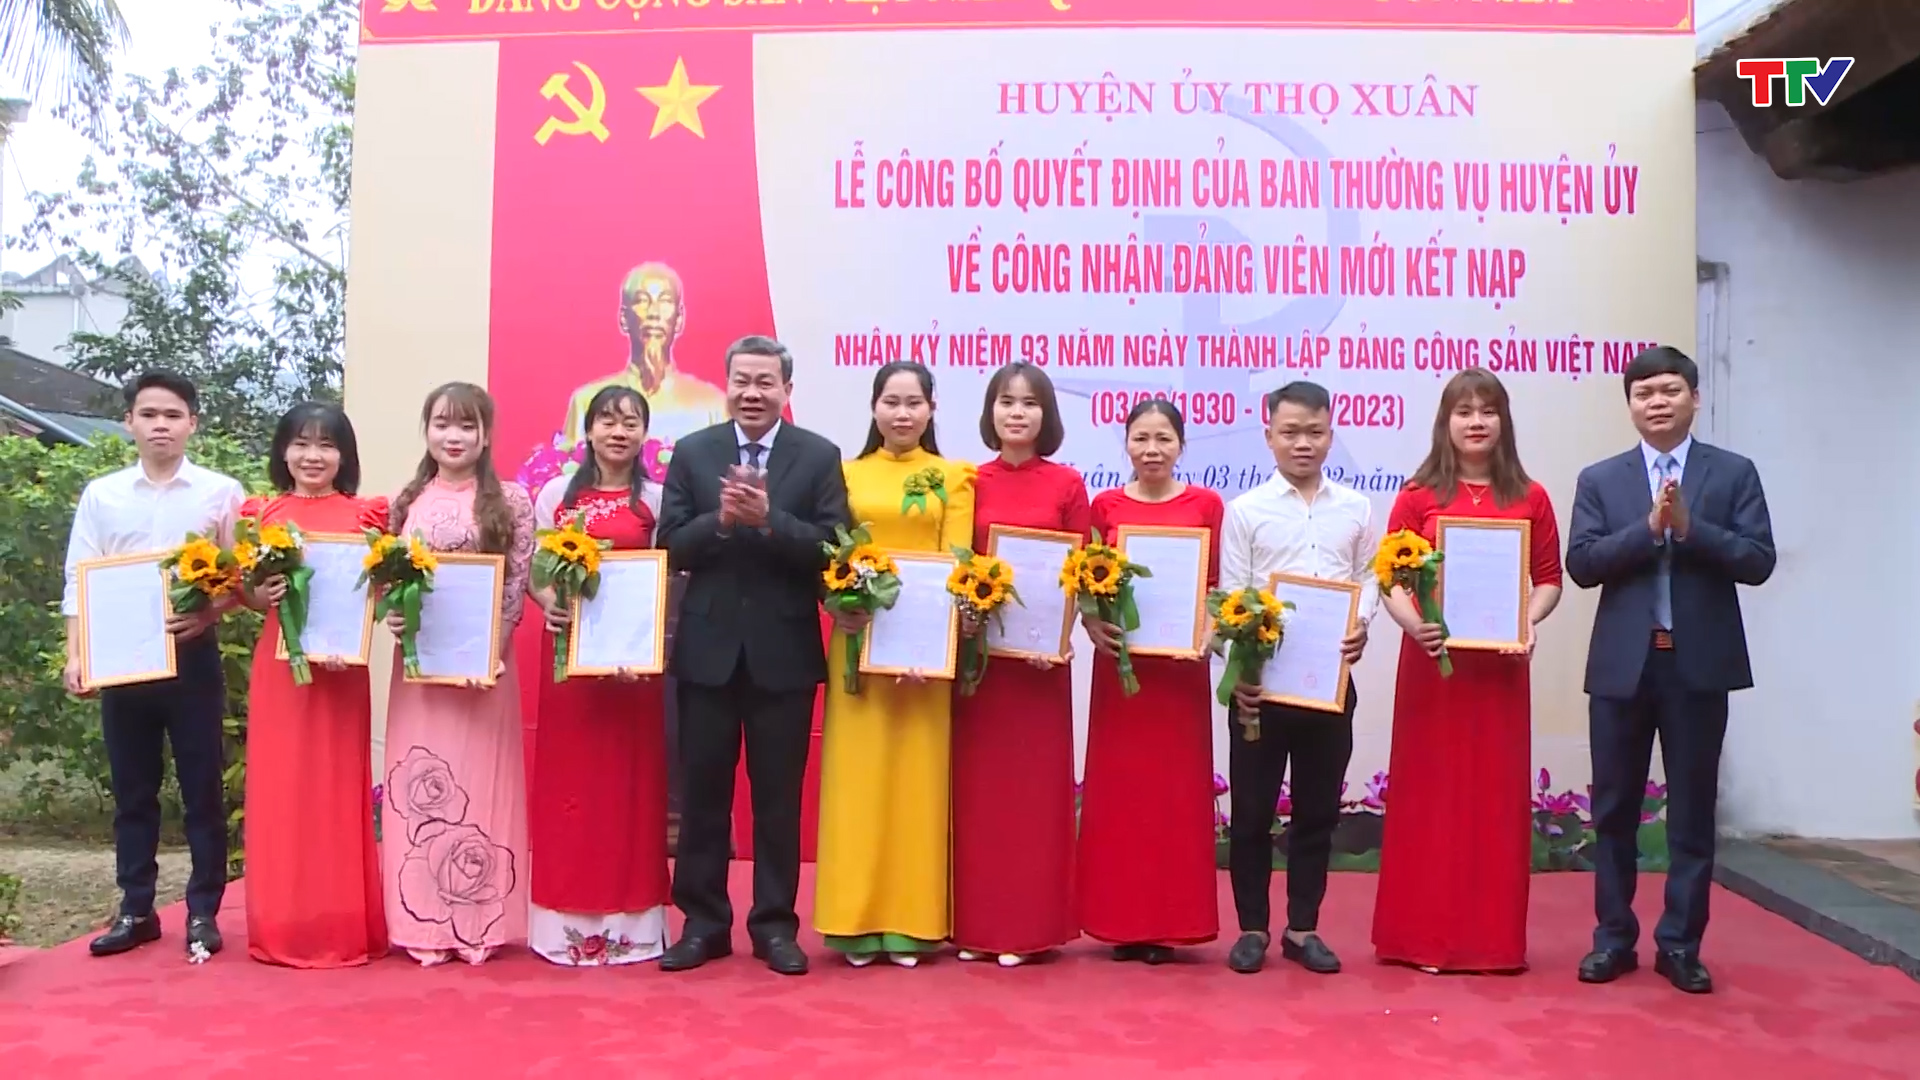 Huyện Thọ Xuân công bố Quyết định công nhận đảng viên mới - Ảnh 1.